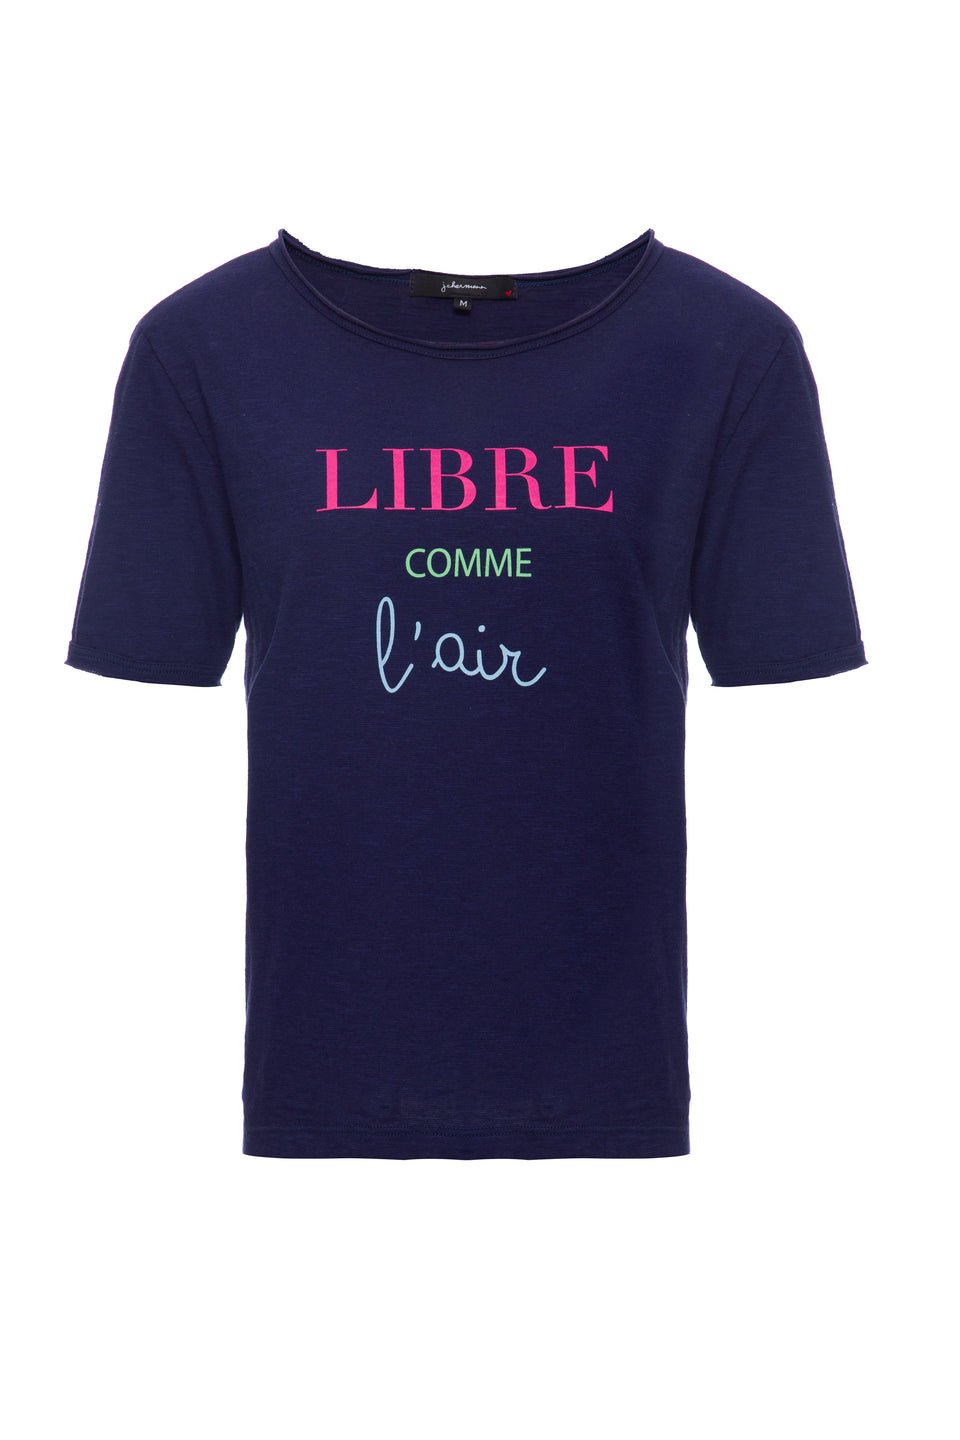 Camiseta Libre Comme L'air Azul Marinho